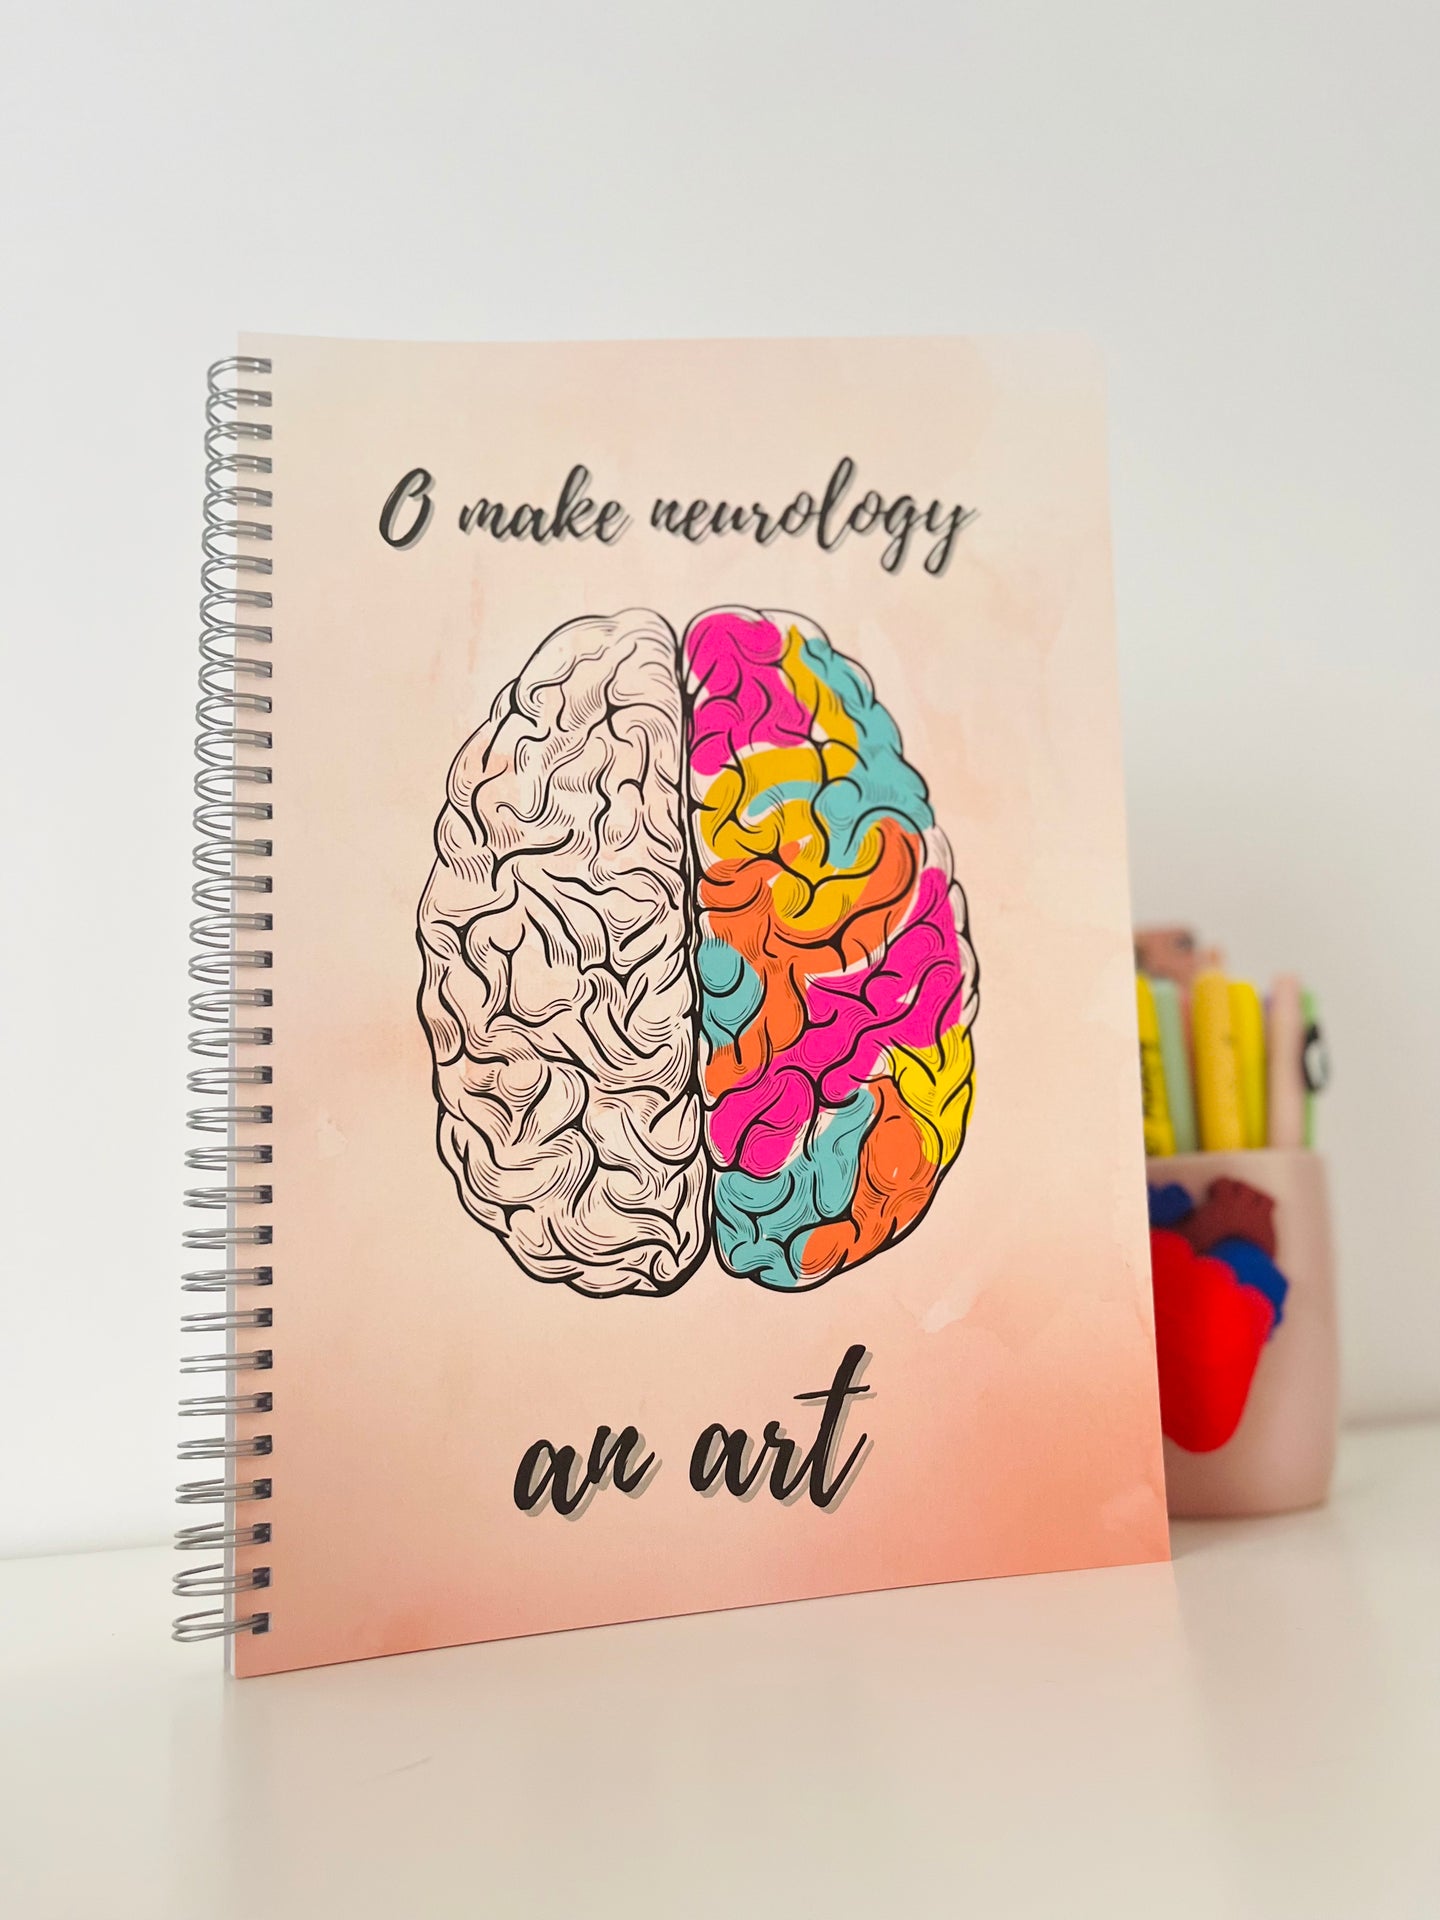 Neurology an art.  art4ar